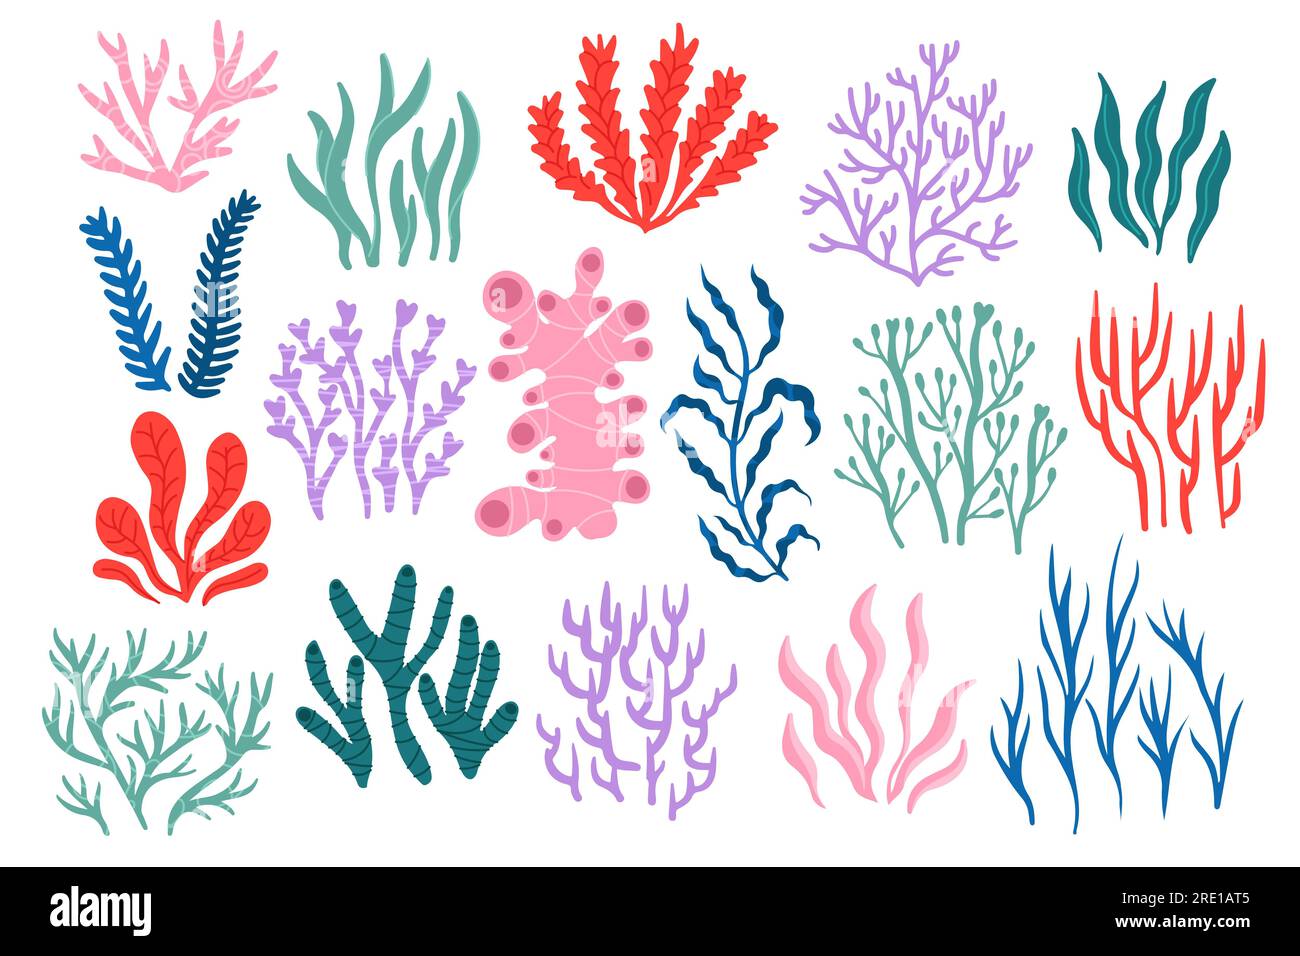 Coraux marins. Flore et faune sous-marines tropicales, collection colorée de récifs coralliens de diverses formes, toile de fond botanique marine exotique pour la conception d'autocollants Illustration de Vecteur